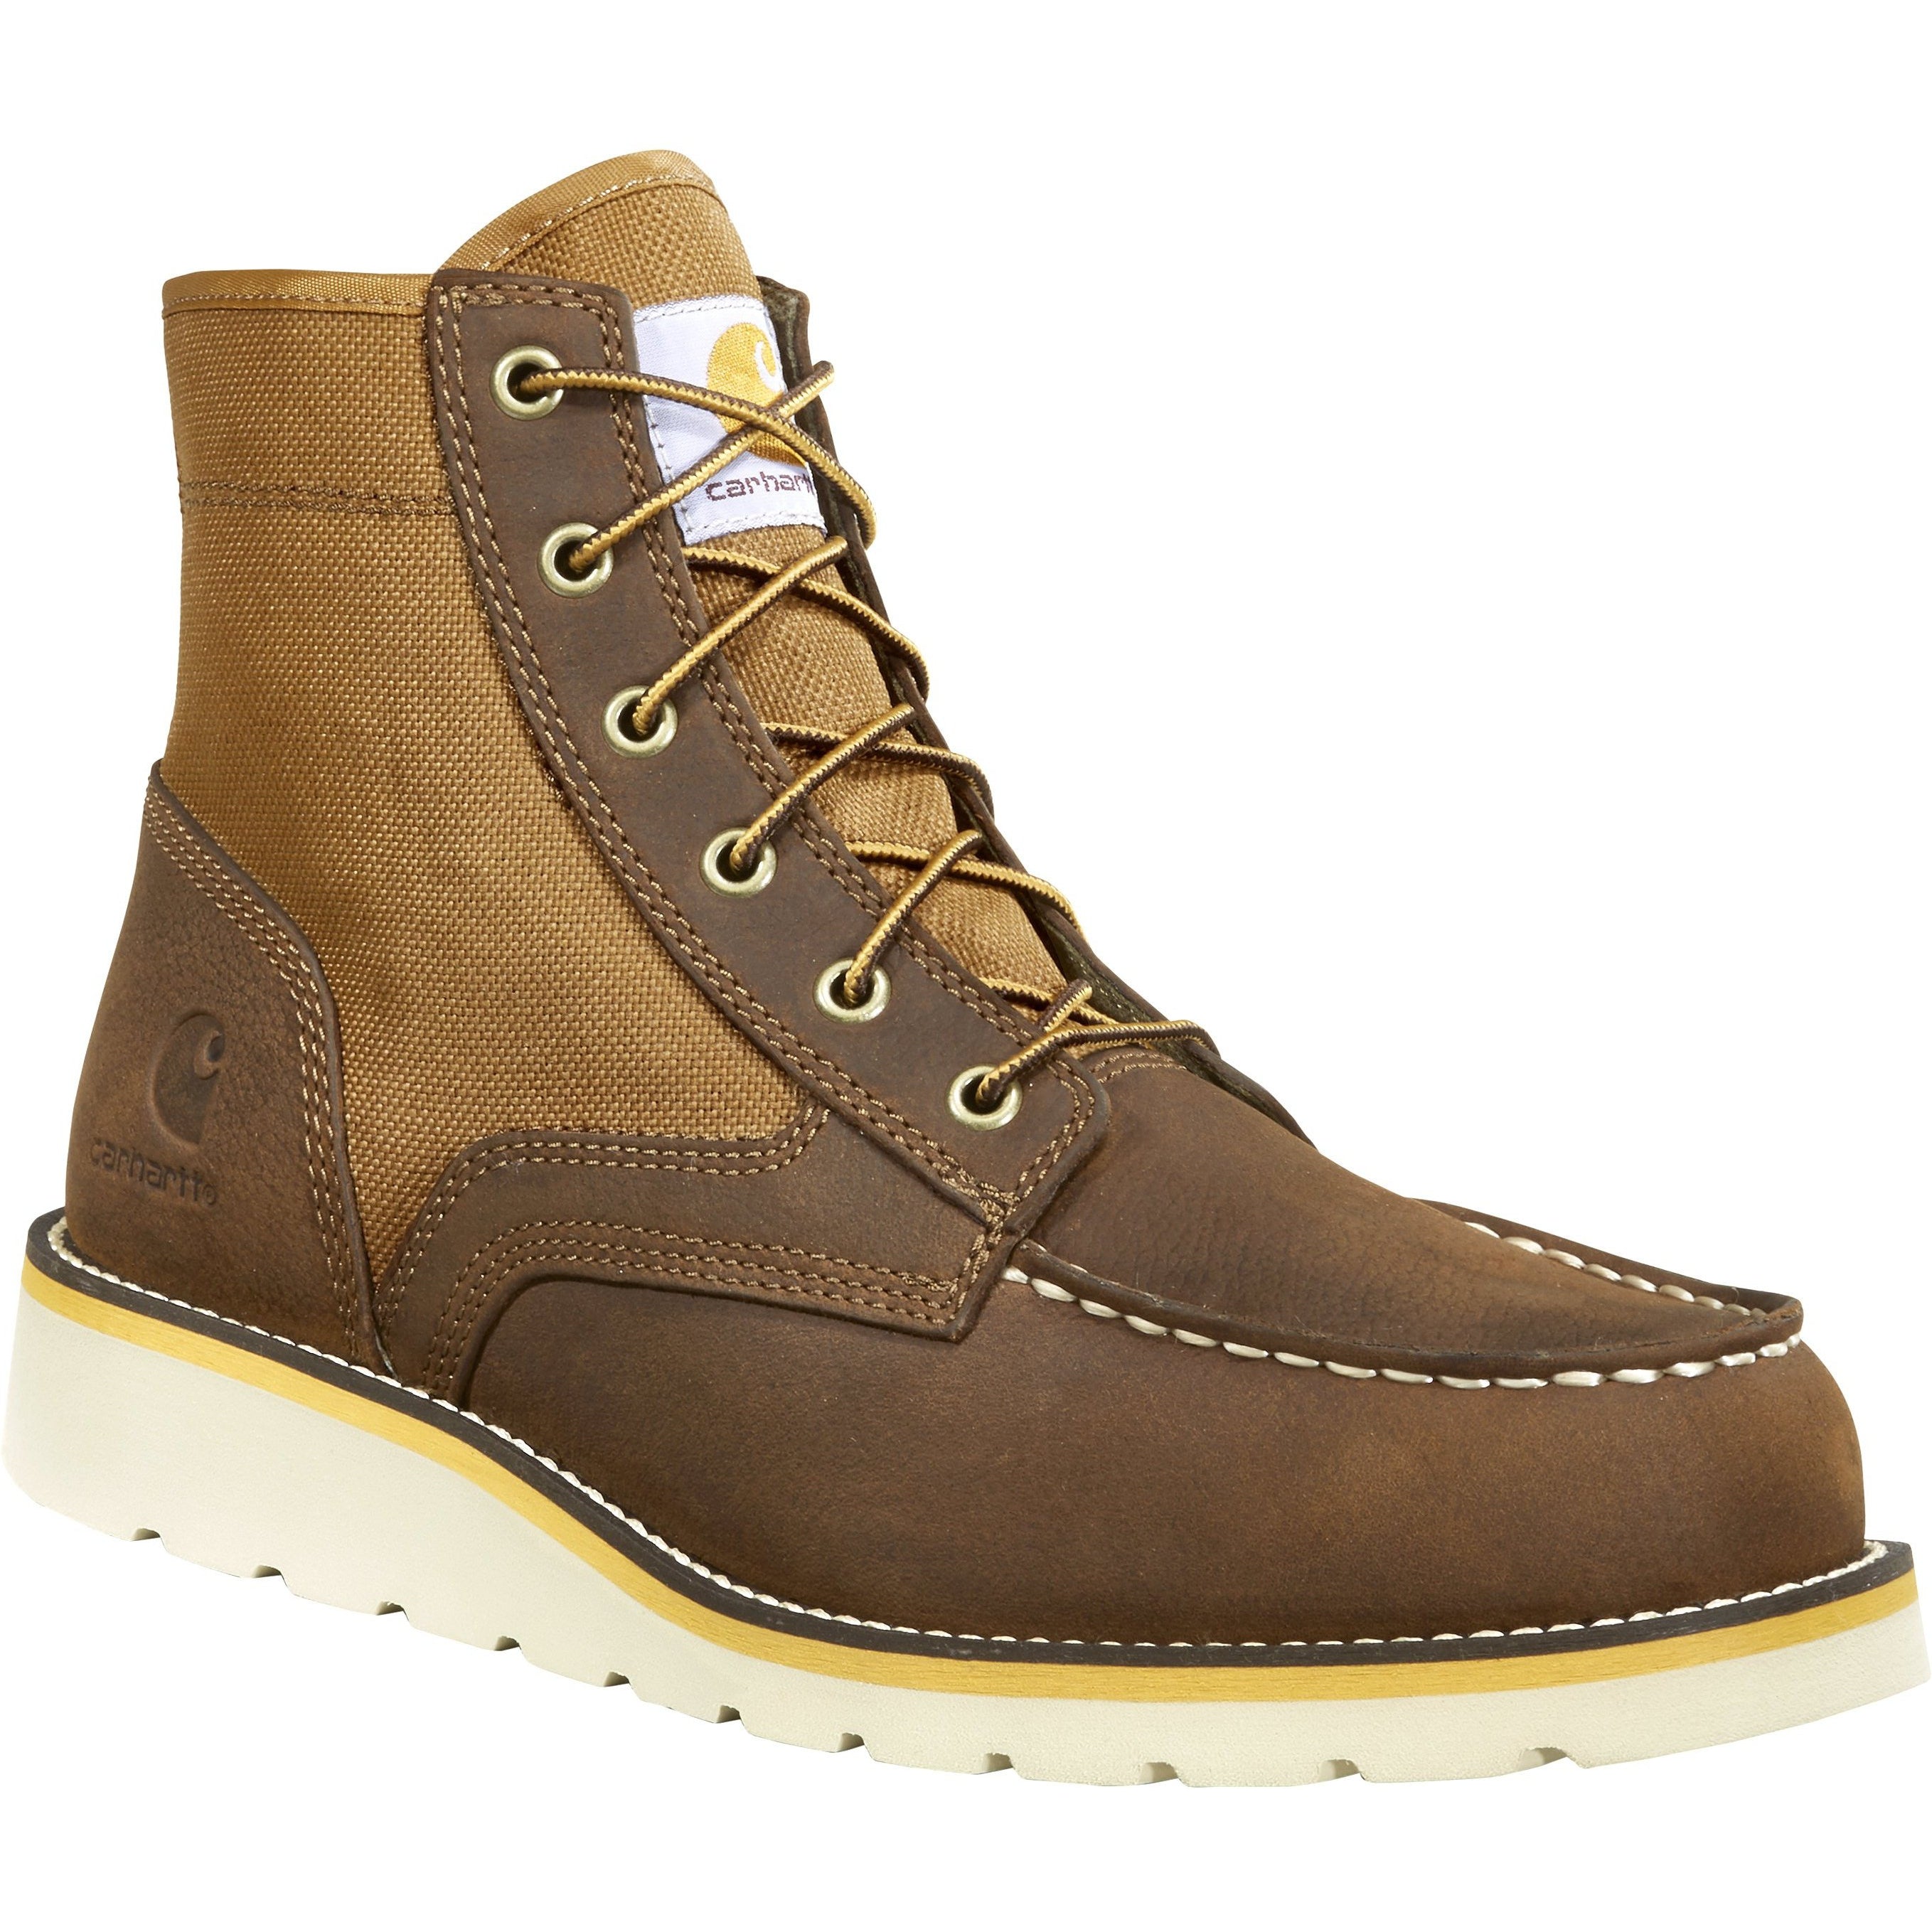 Carhartt Men's 6" Soft Toe Wedge Work Boot - Brown - FW6035-M 8 / Medium / Brown - Overlook Boots